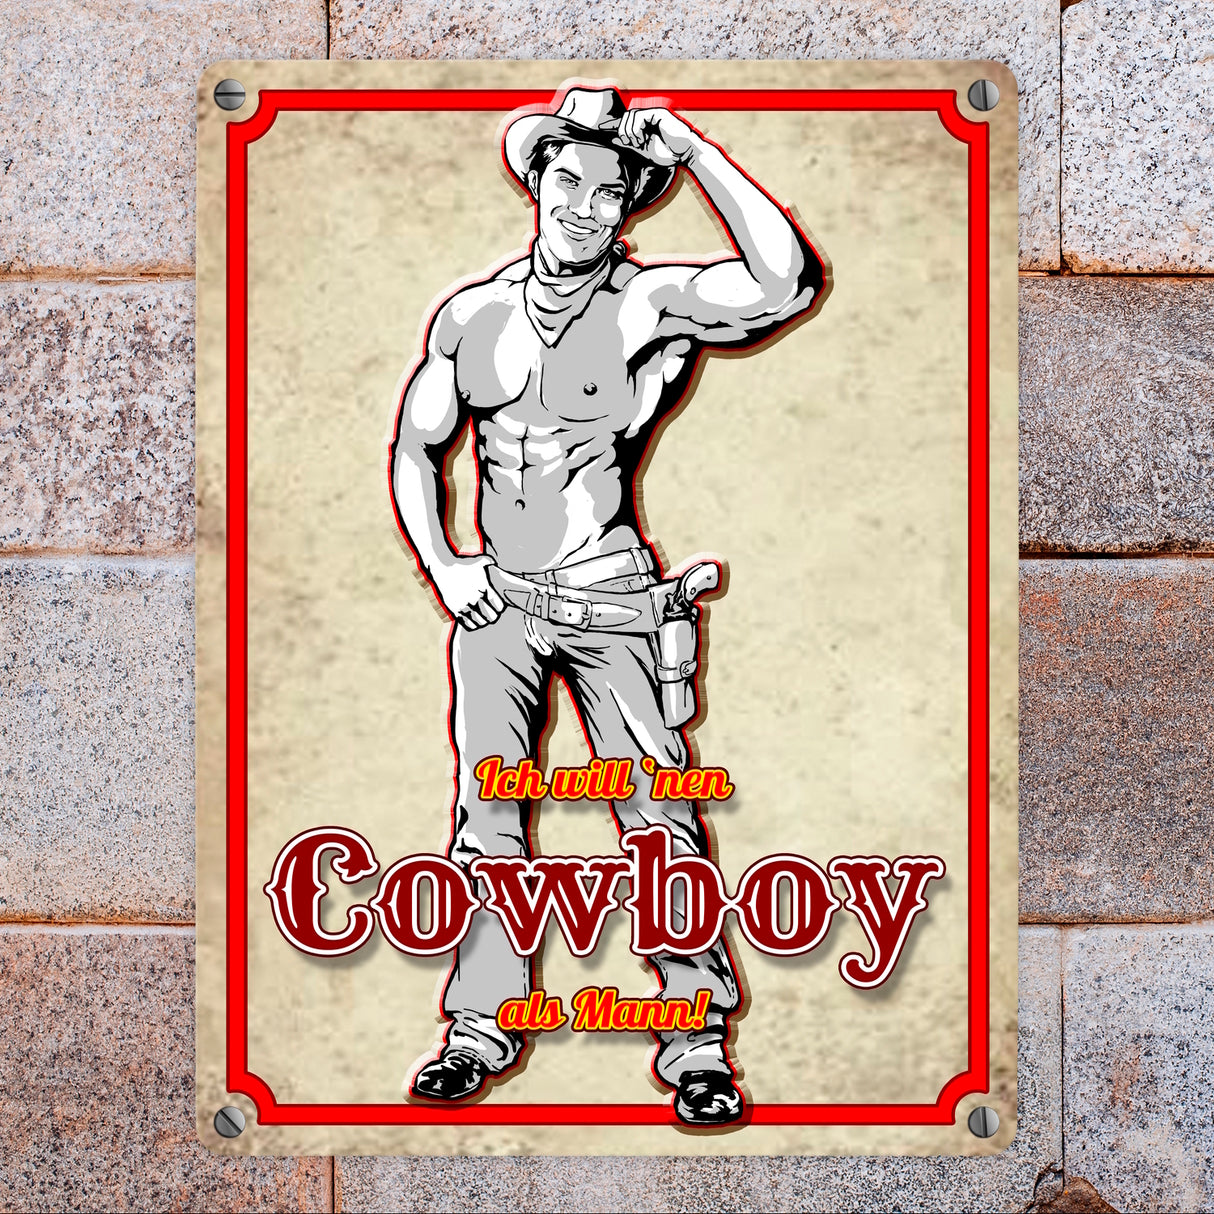 Metallschild mit sexy Cowboy und Spruch - Ich will 'nen Cowboy als Mann